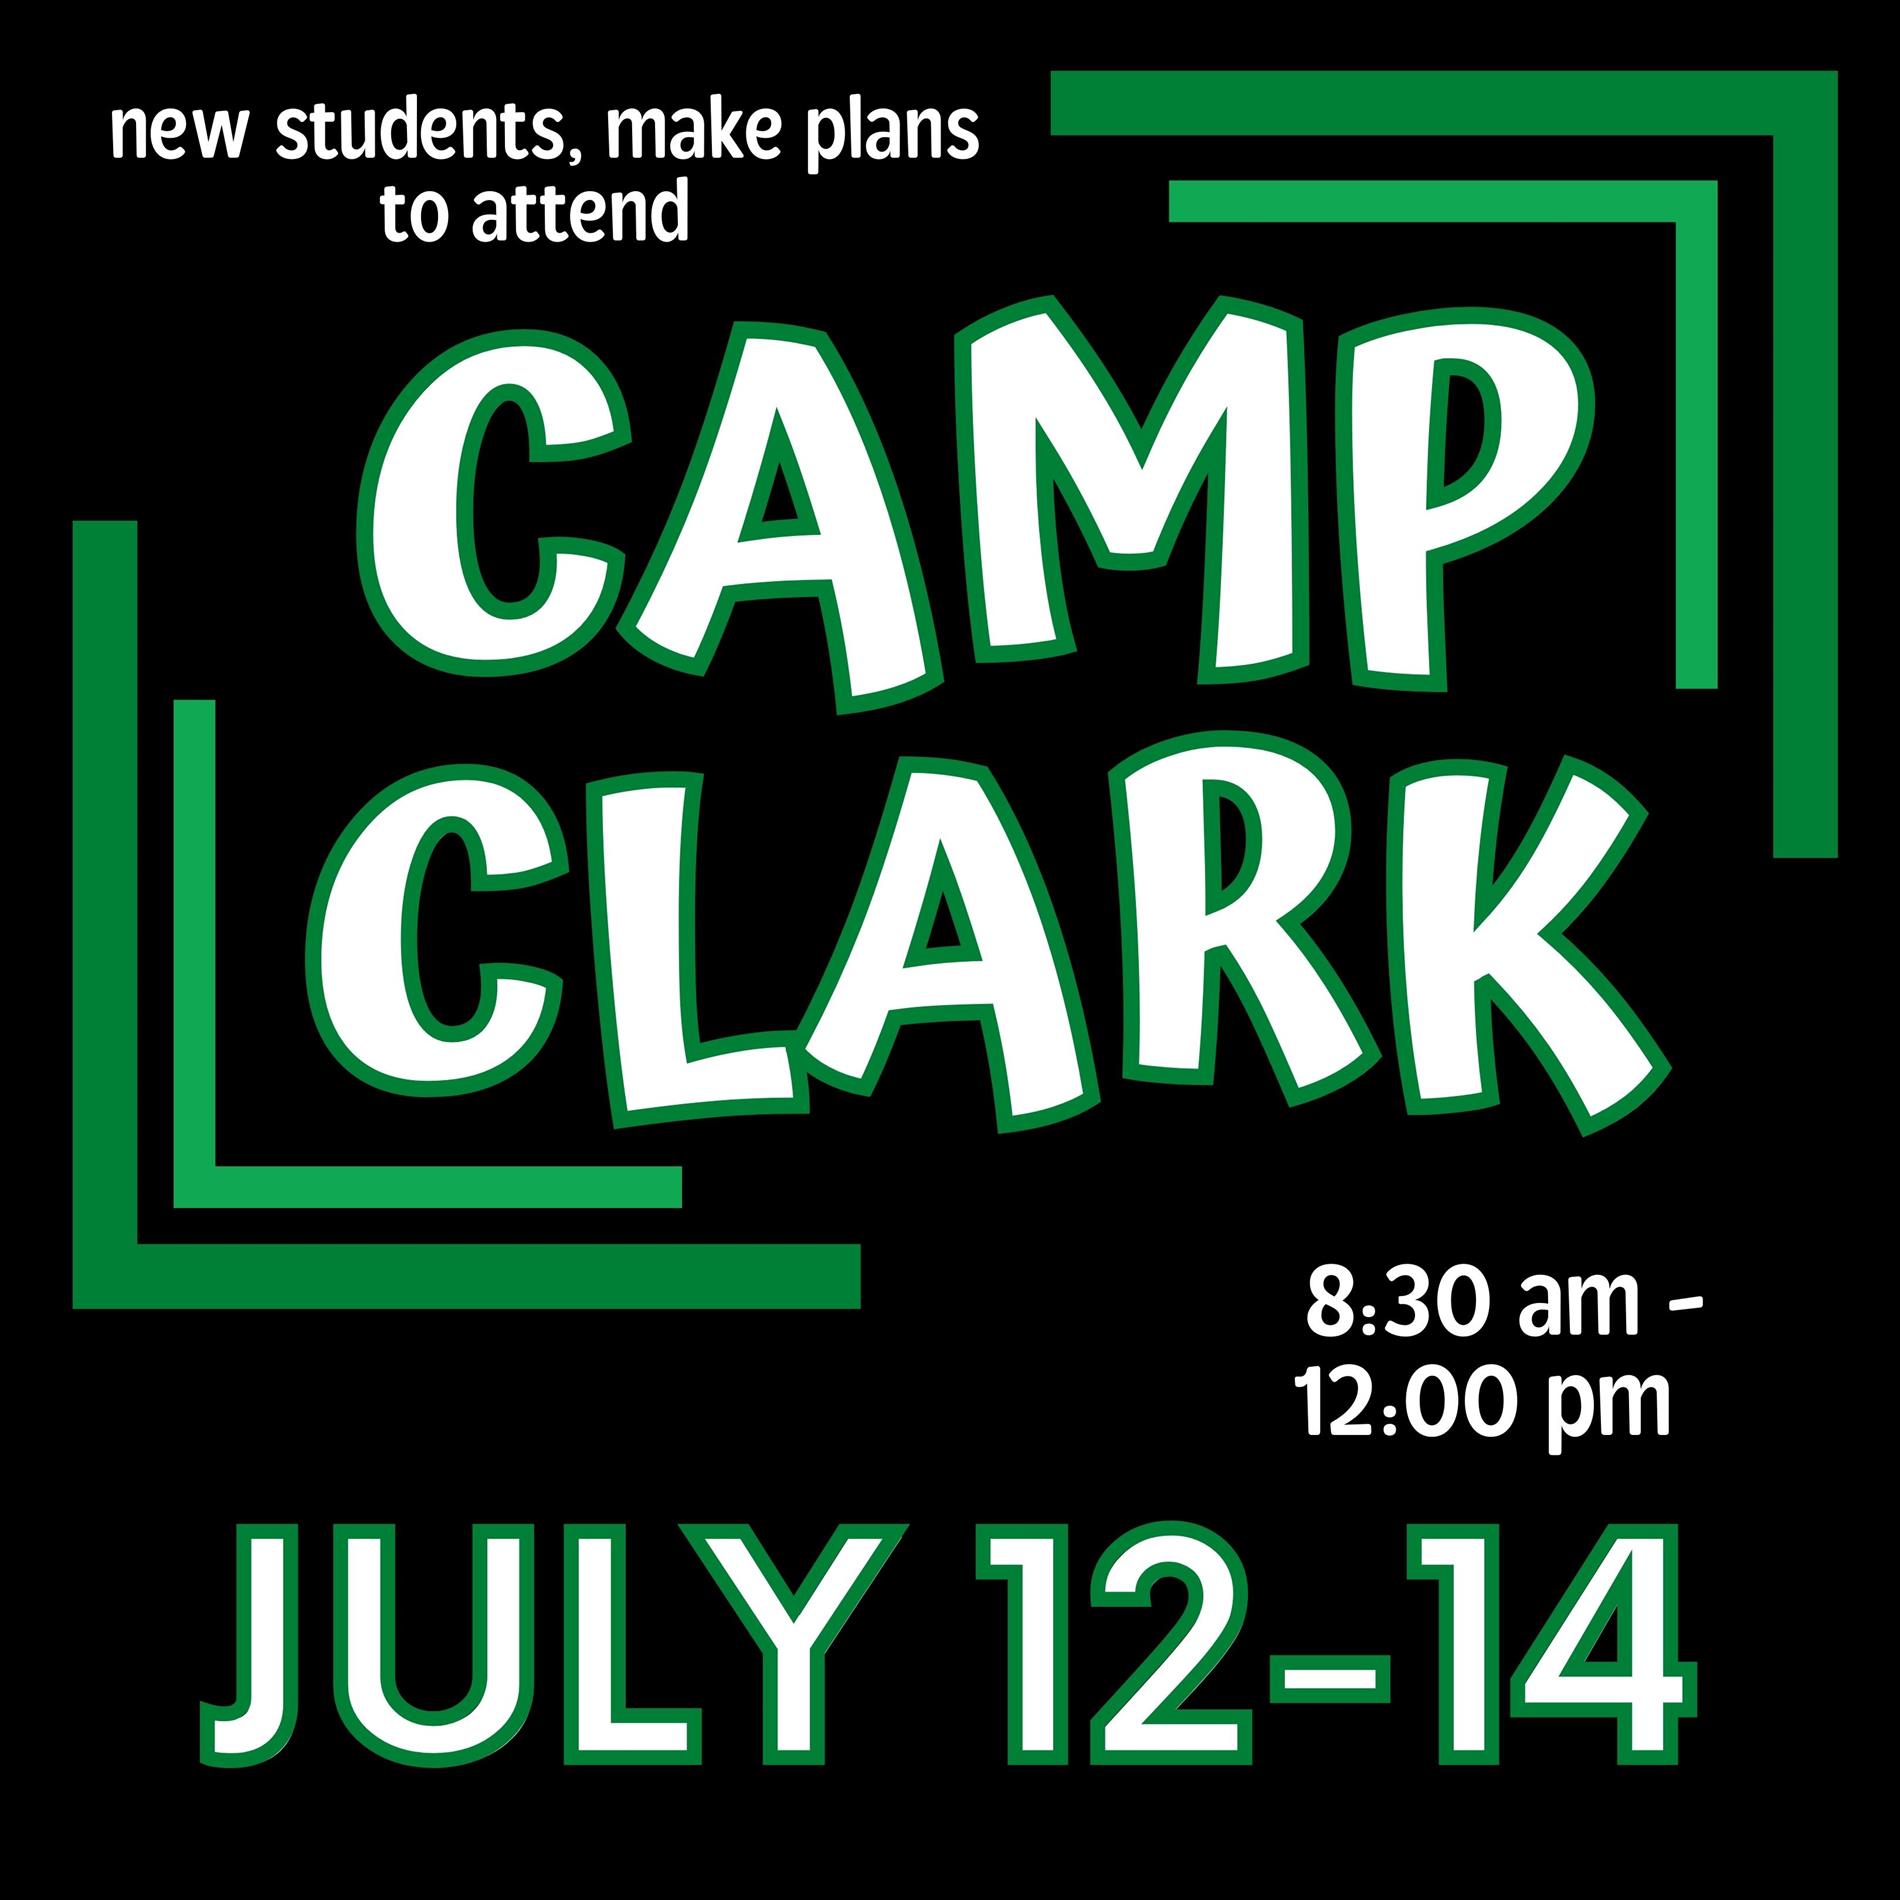 Camp Clark dates